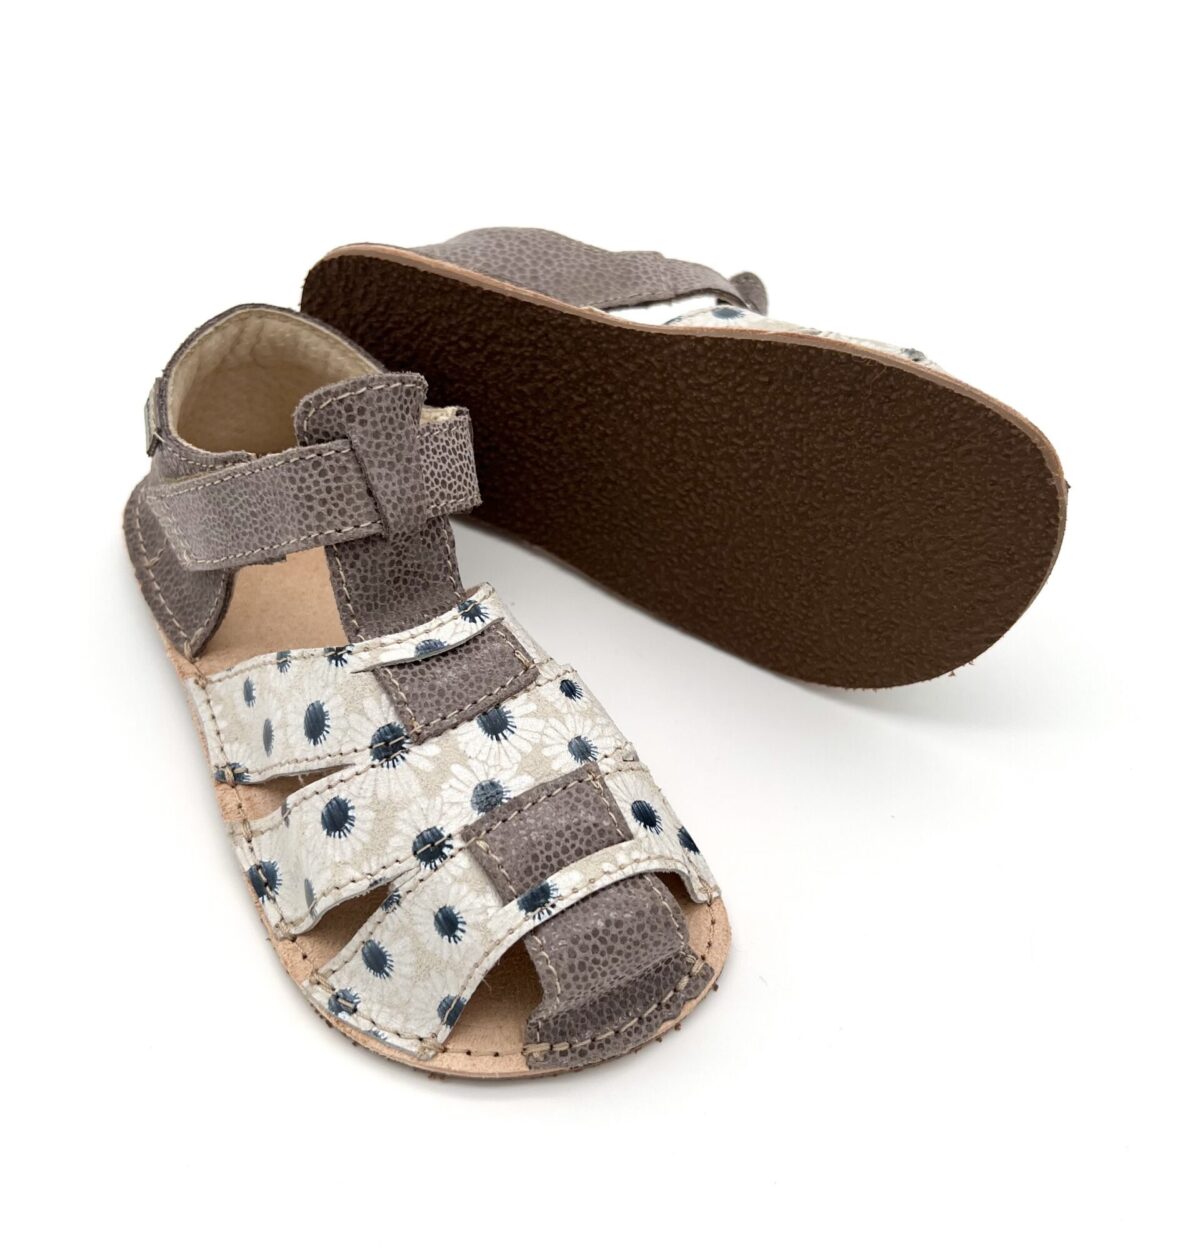 Ok Bare Palm sandaalid, Karikakar (G) Laste barefoot jalatsid - HellyK - Kvaliteetsed lasteriided, villariided, barefoot jalatsid